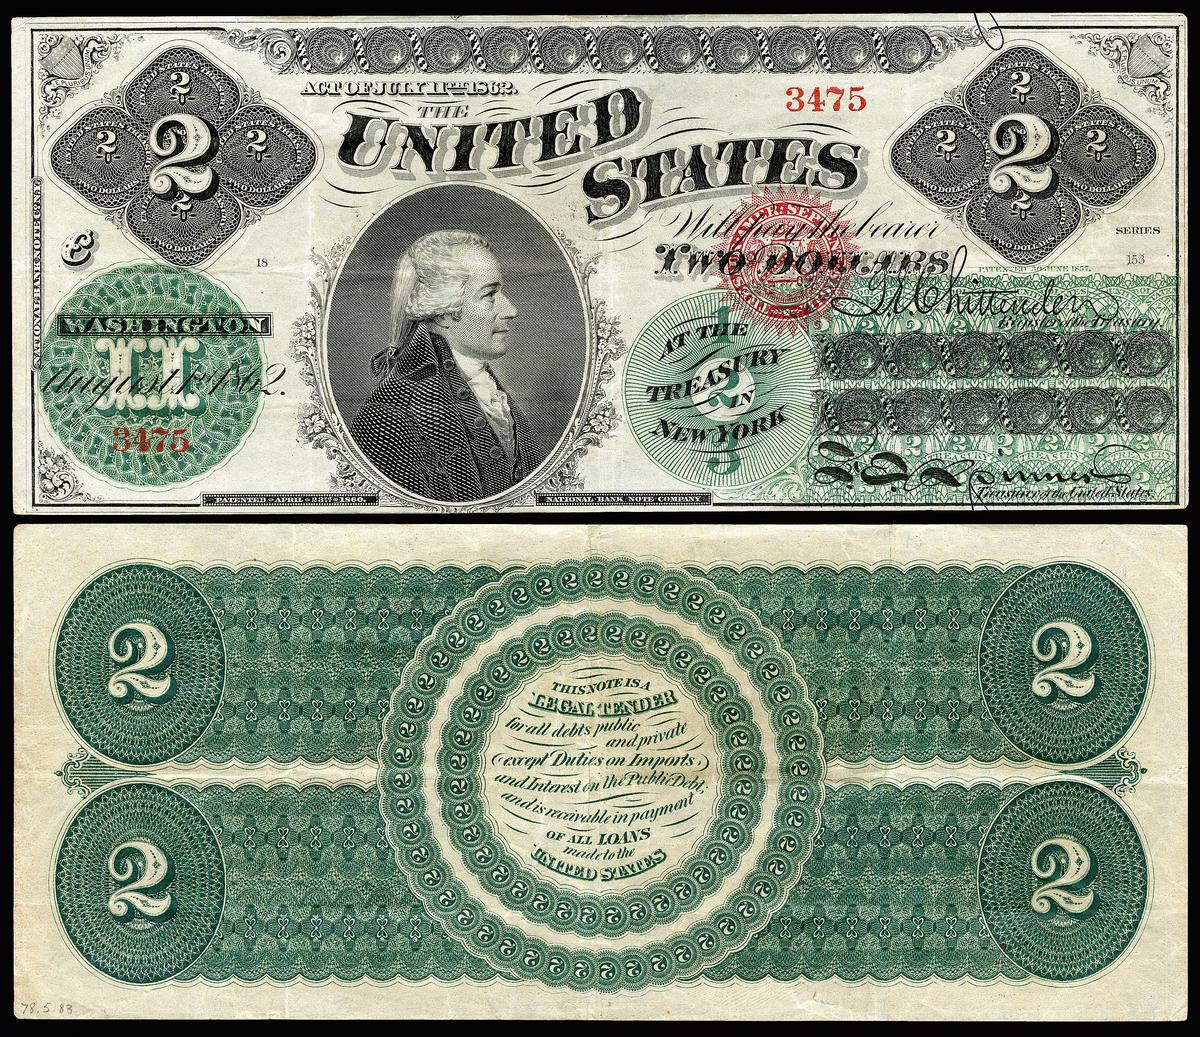 Một tờ 2 đô la năm 1862, không được lưu hành, được định giá để lấy 2.800 đô la khi bán đấu giá. (<a href="https://en.wikipedia.org/wiki/File:US-$2-LT-1862-Fr-41.jpg">Bộ sưu tập số học quốc gia, Bảo tàng lịch sử quốc gia Hoa Kỳ</a>/CC BY-SA 4.0)